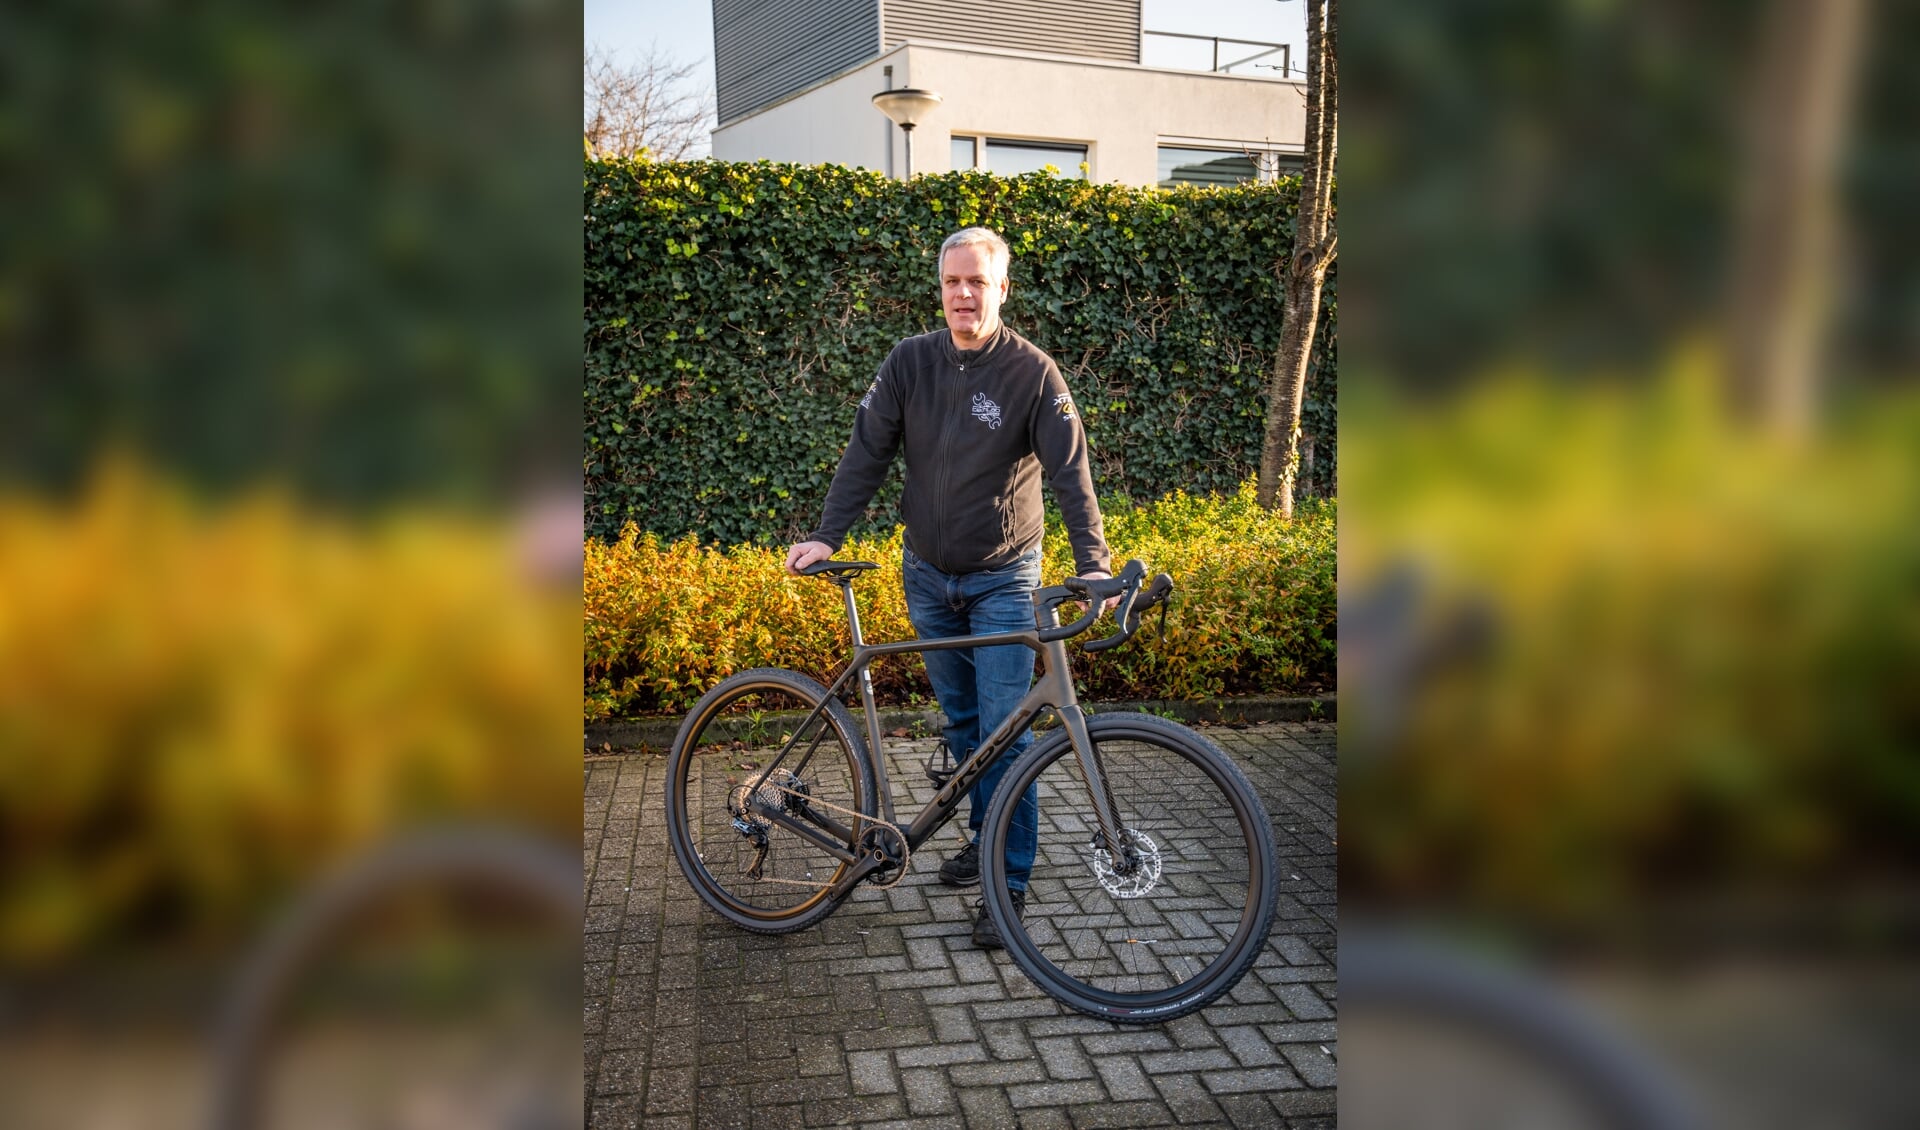 Helmut van der Jagt: 'Ik weet niet goed waarom ik het fietsen zo leuk vind. Ik ben er ooit mee begonnen en daarna nooit meer gestopt. Het pakt je gewoon, denk ik'